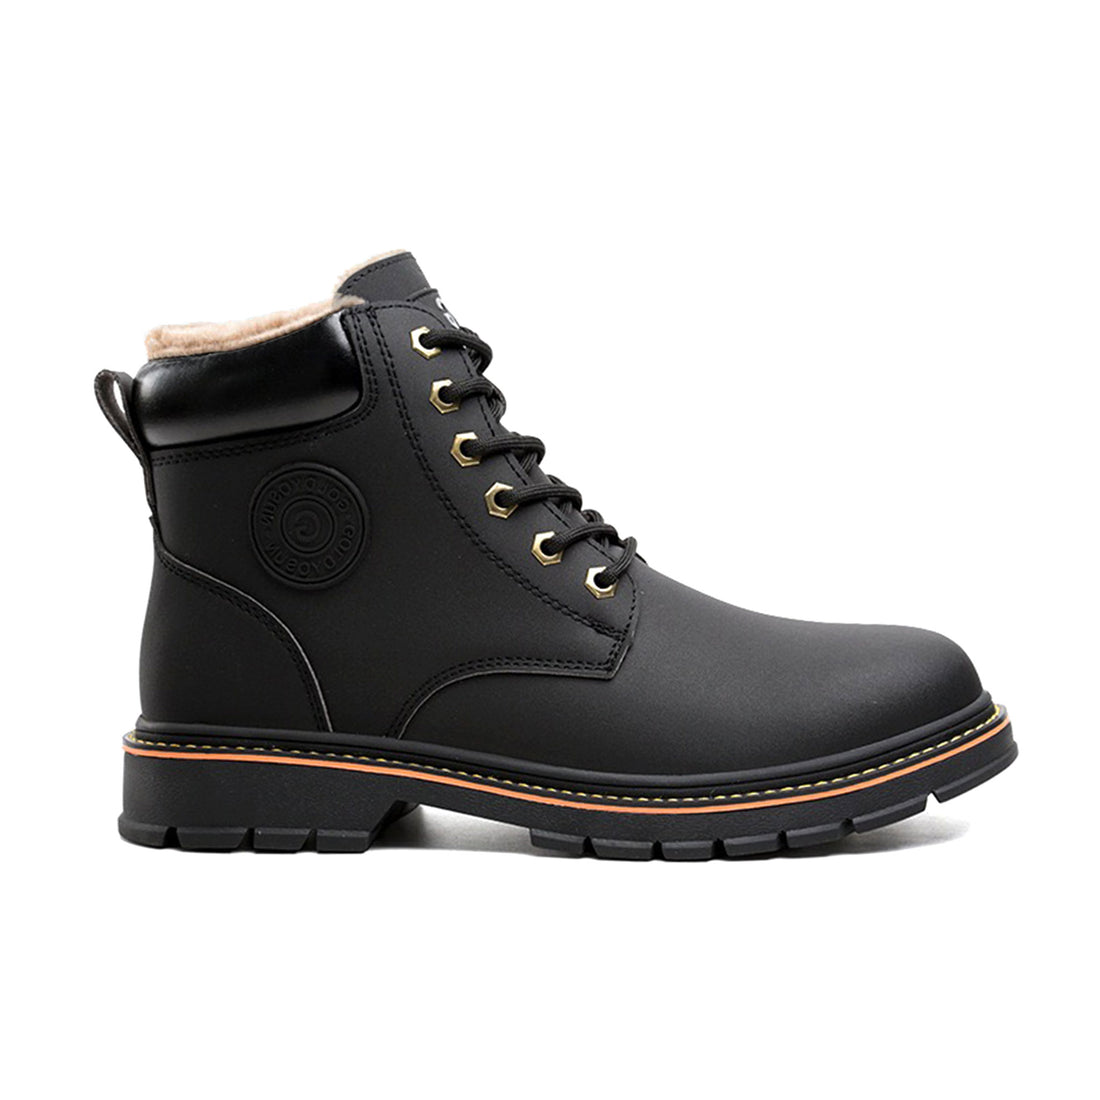 Women's Steel Toe Winter Boots - Fleece Lined | B254